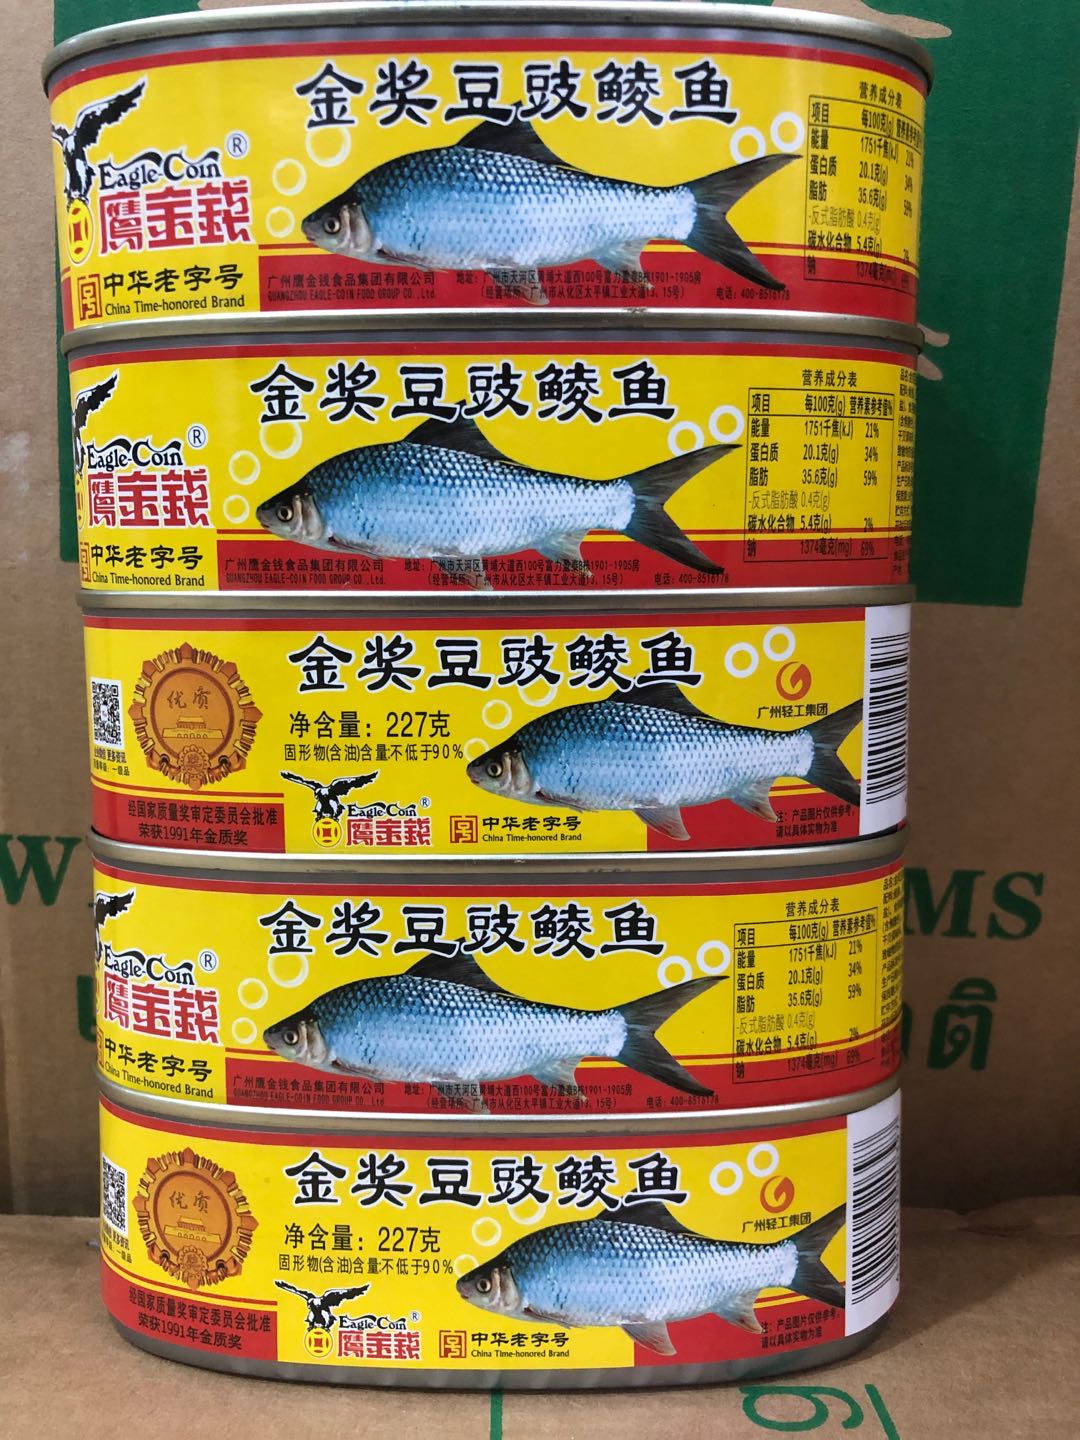 รูปภาพรายละเอียดของ ปลาเต้าซี่ตรานกอินทรีย์ ของแท้ Engle Coin (กระป๋องละ)金奖豆豉鱼